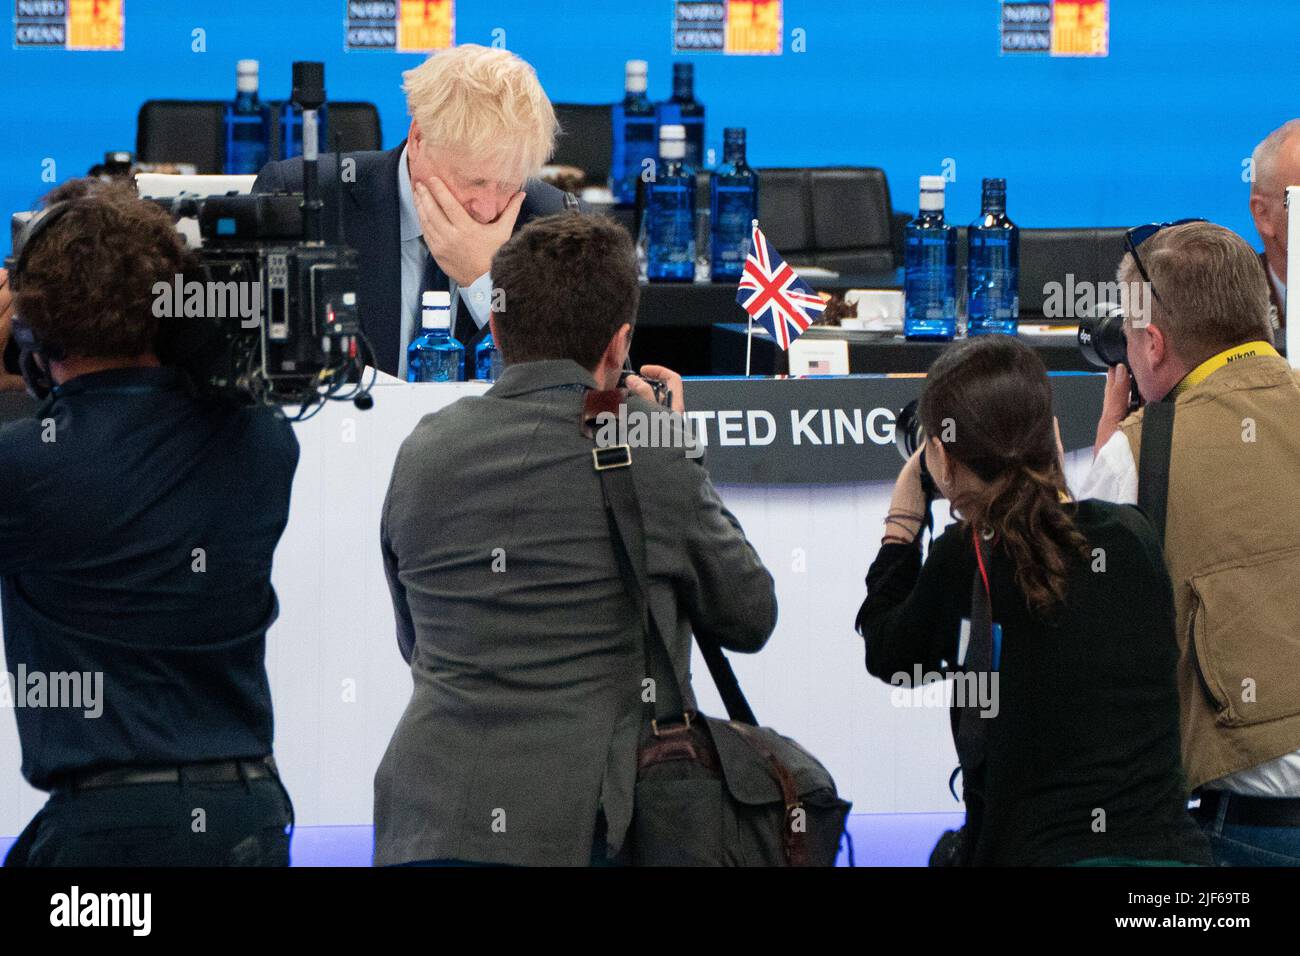 Premierminister Boris Johnson nimmt während des NATO-Gipfels in Madrid, Spanien, an einem Treffen des Nordatlantikrates mit anderen NATO-Mitgliedern Teil. Bilddatum: Donnerstag, 30. Juni 2022. Stockfoto